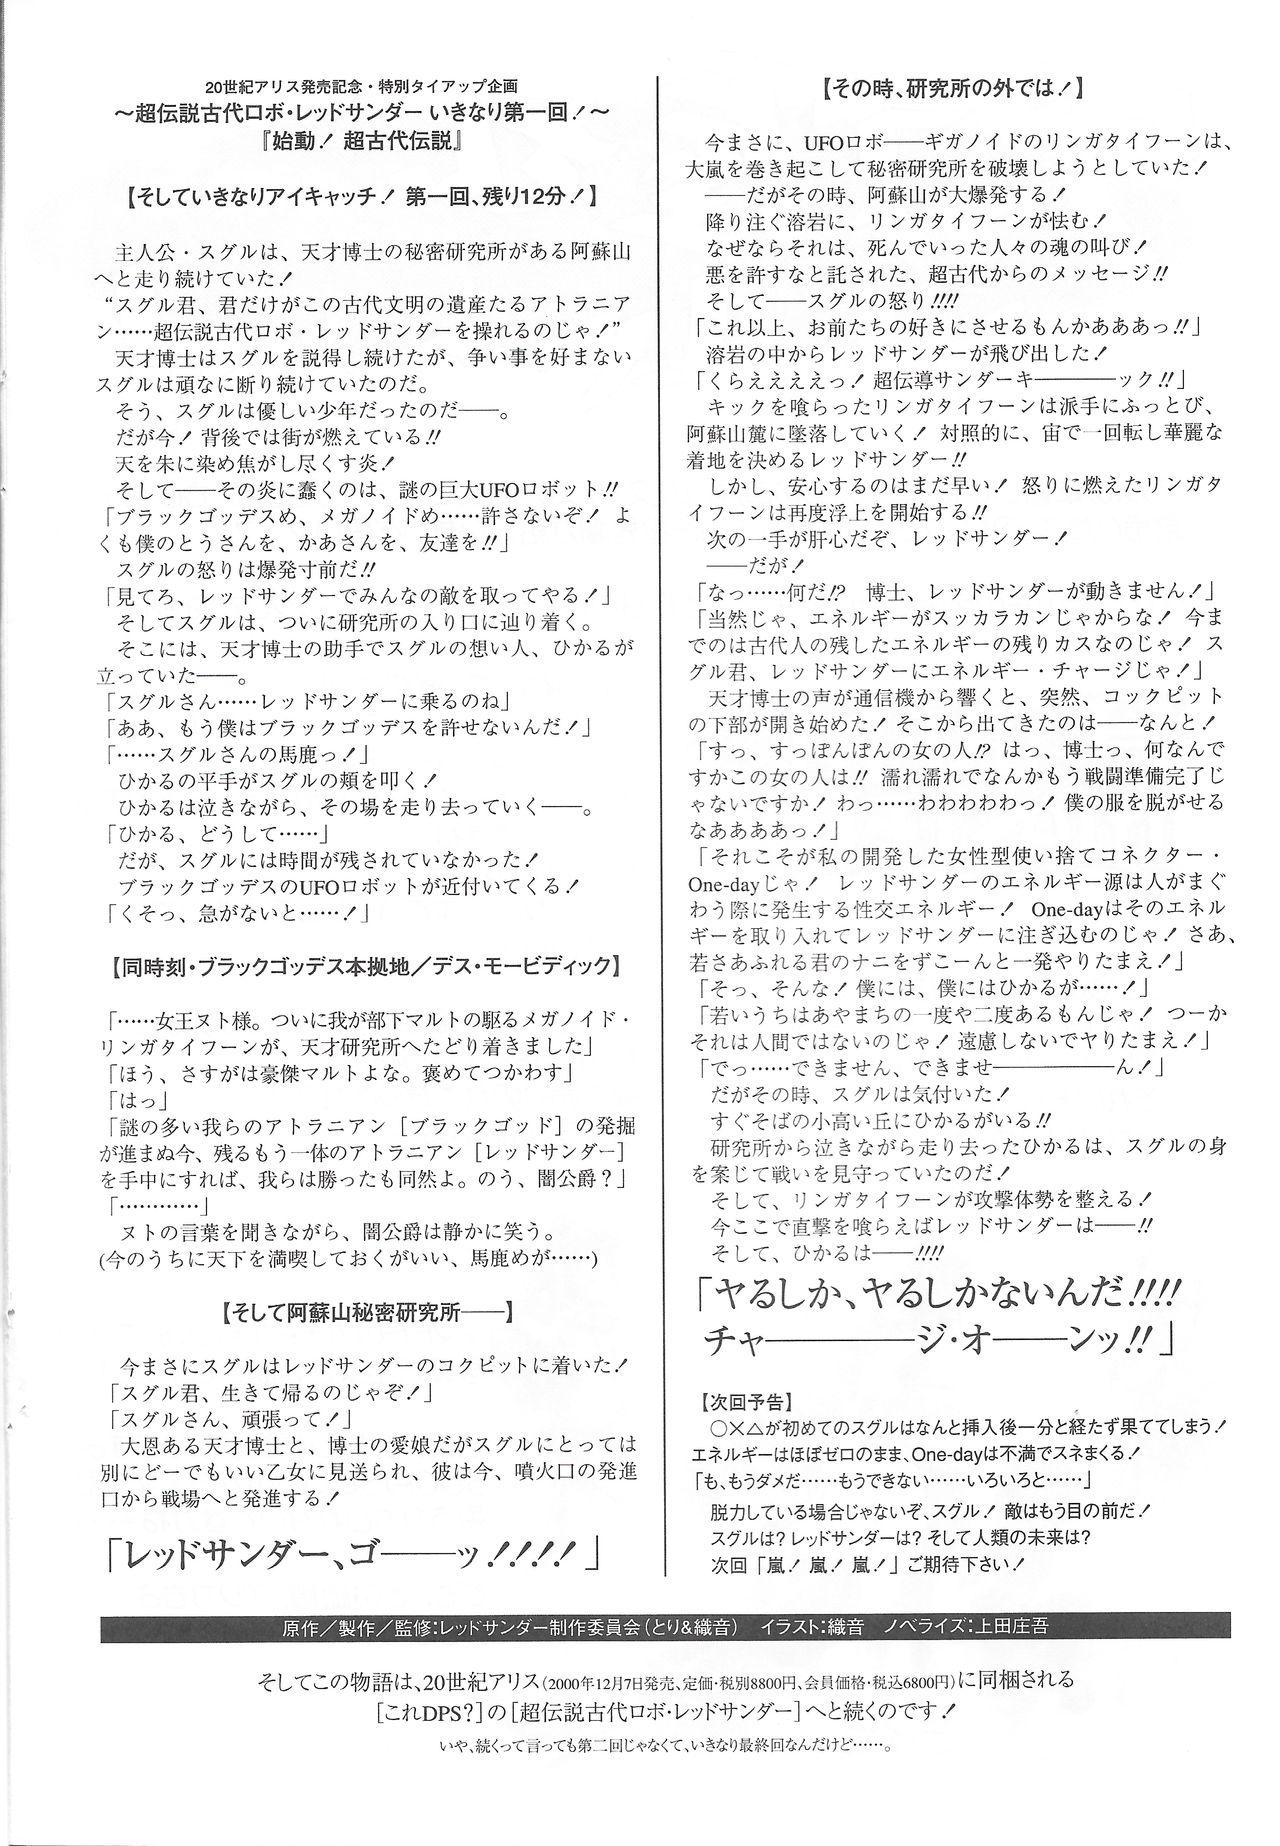 Arisu no Denchi Bakudan Vol. 14 10